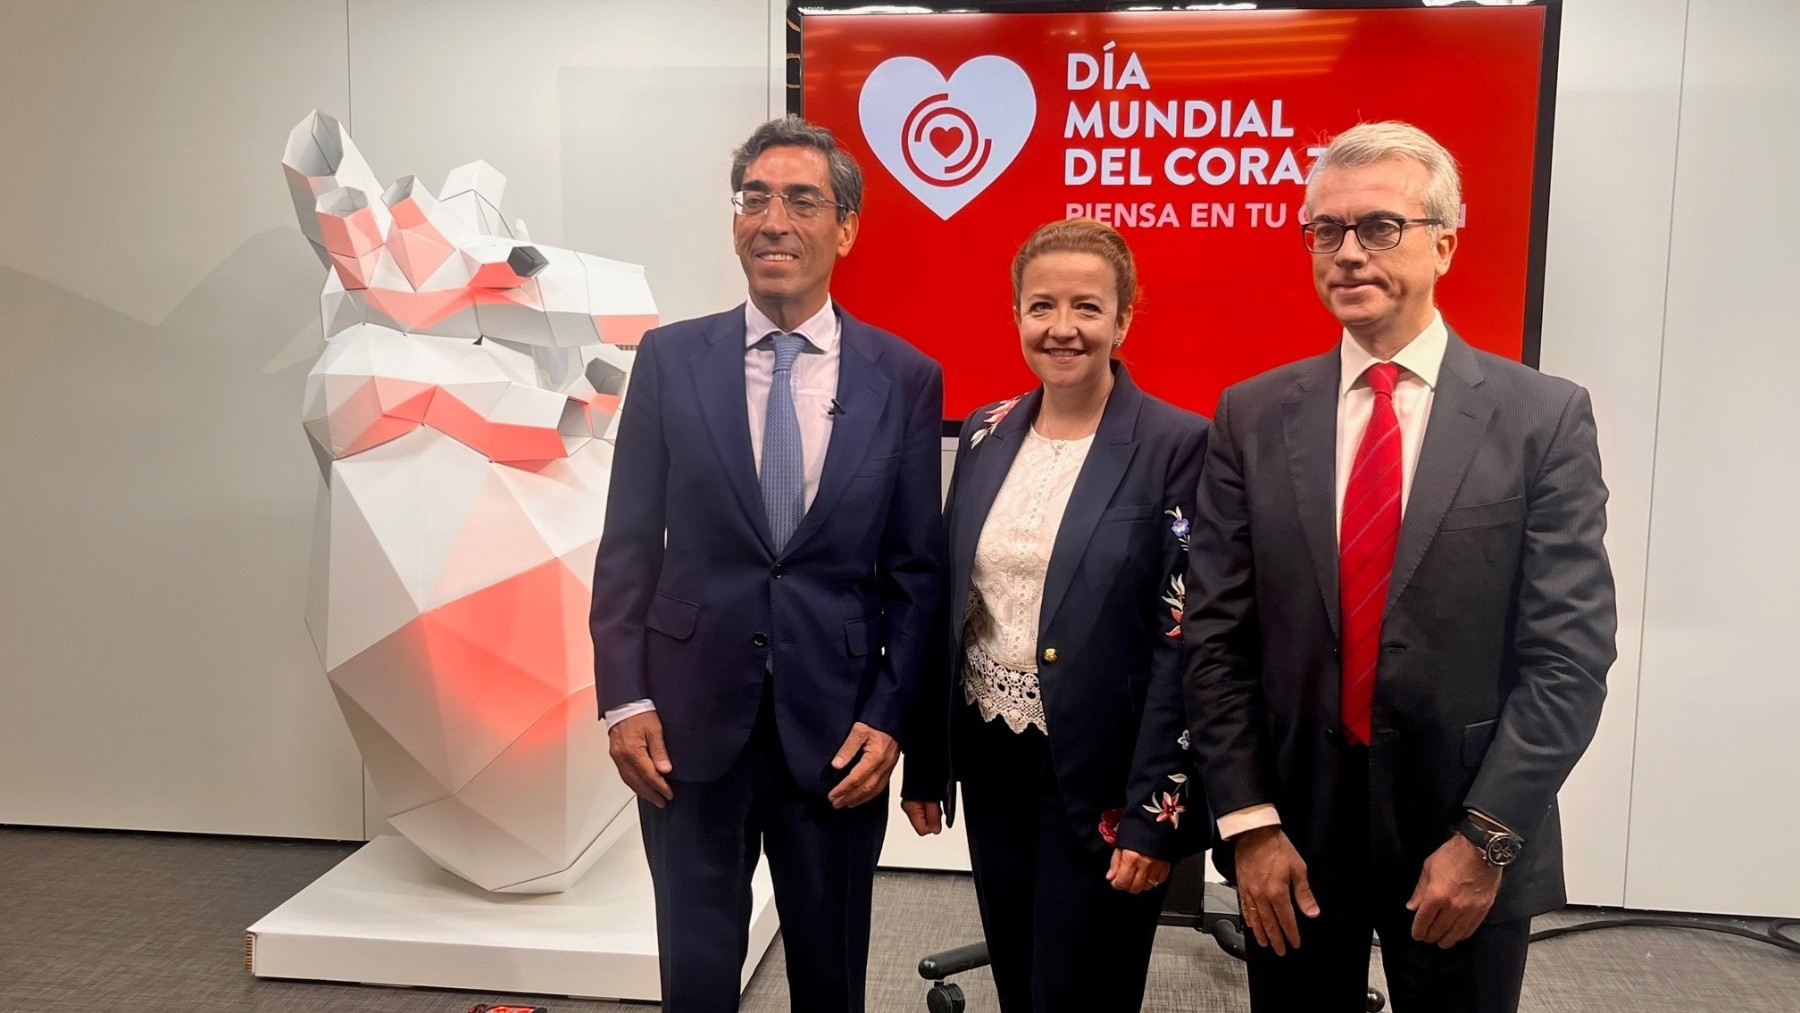 La consejera madrilena de Sanidad, Fátima Matute, en una jornada de la Sociedad Española de Cardiología con motivo del Día Mundial del Corazón